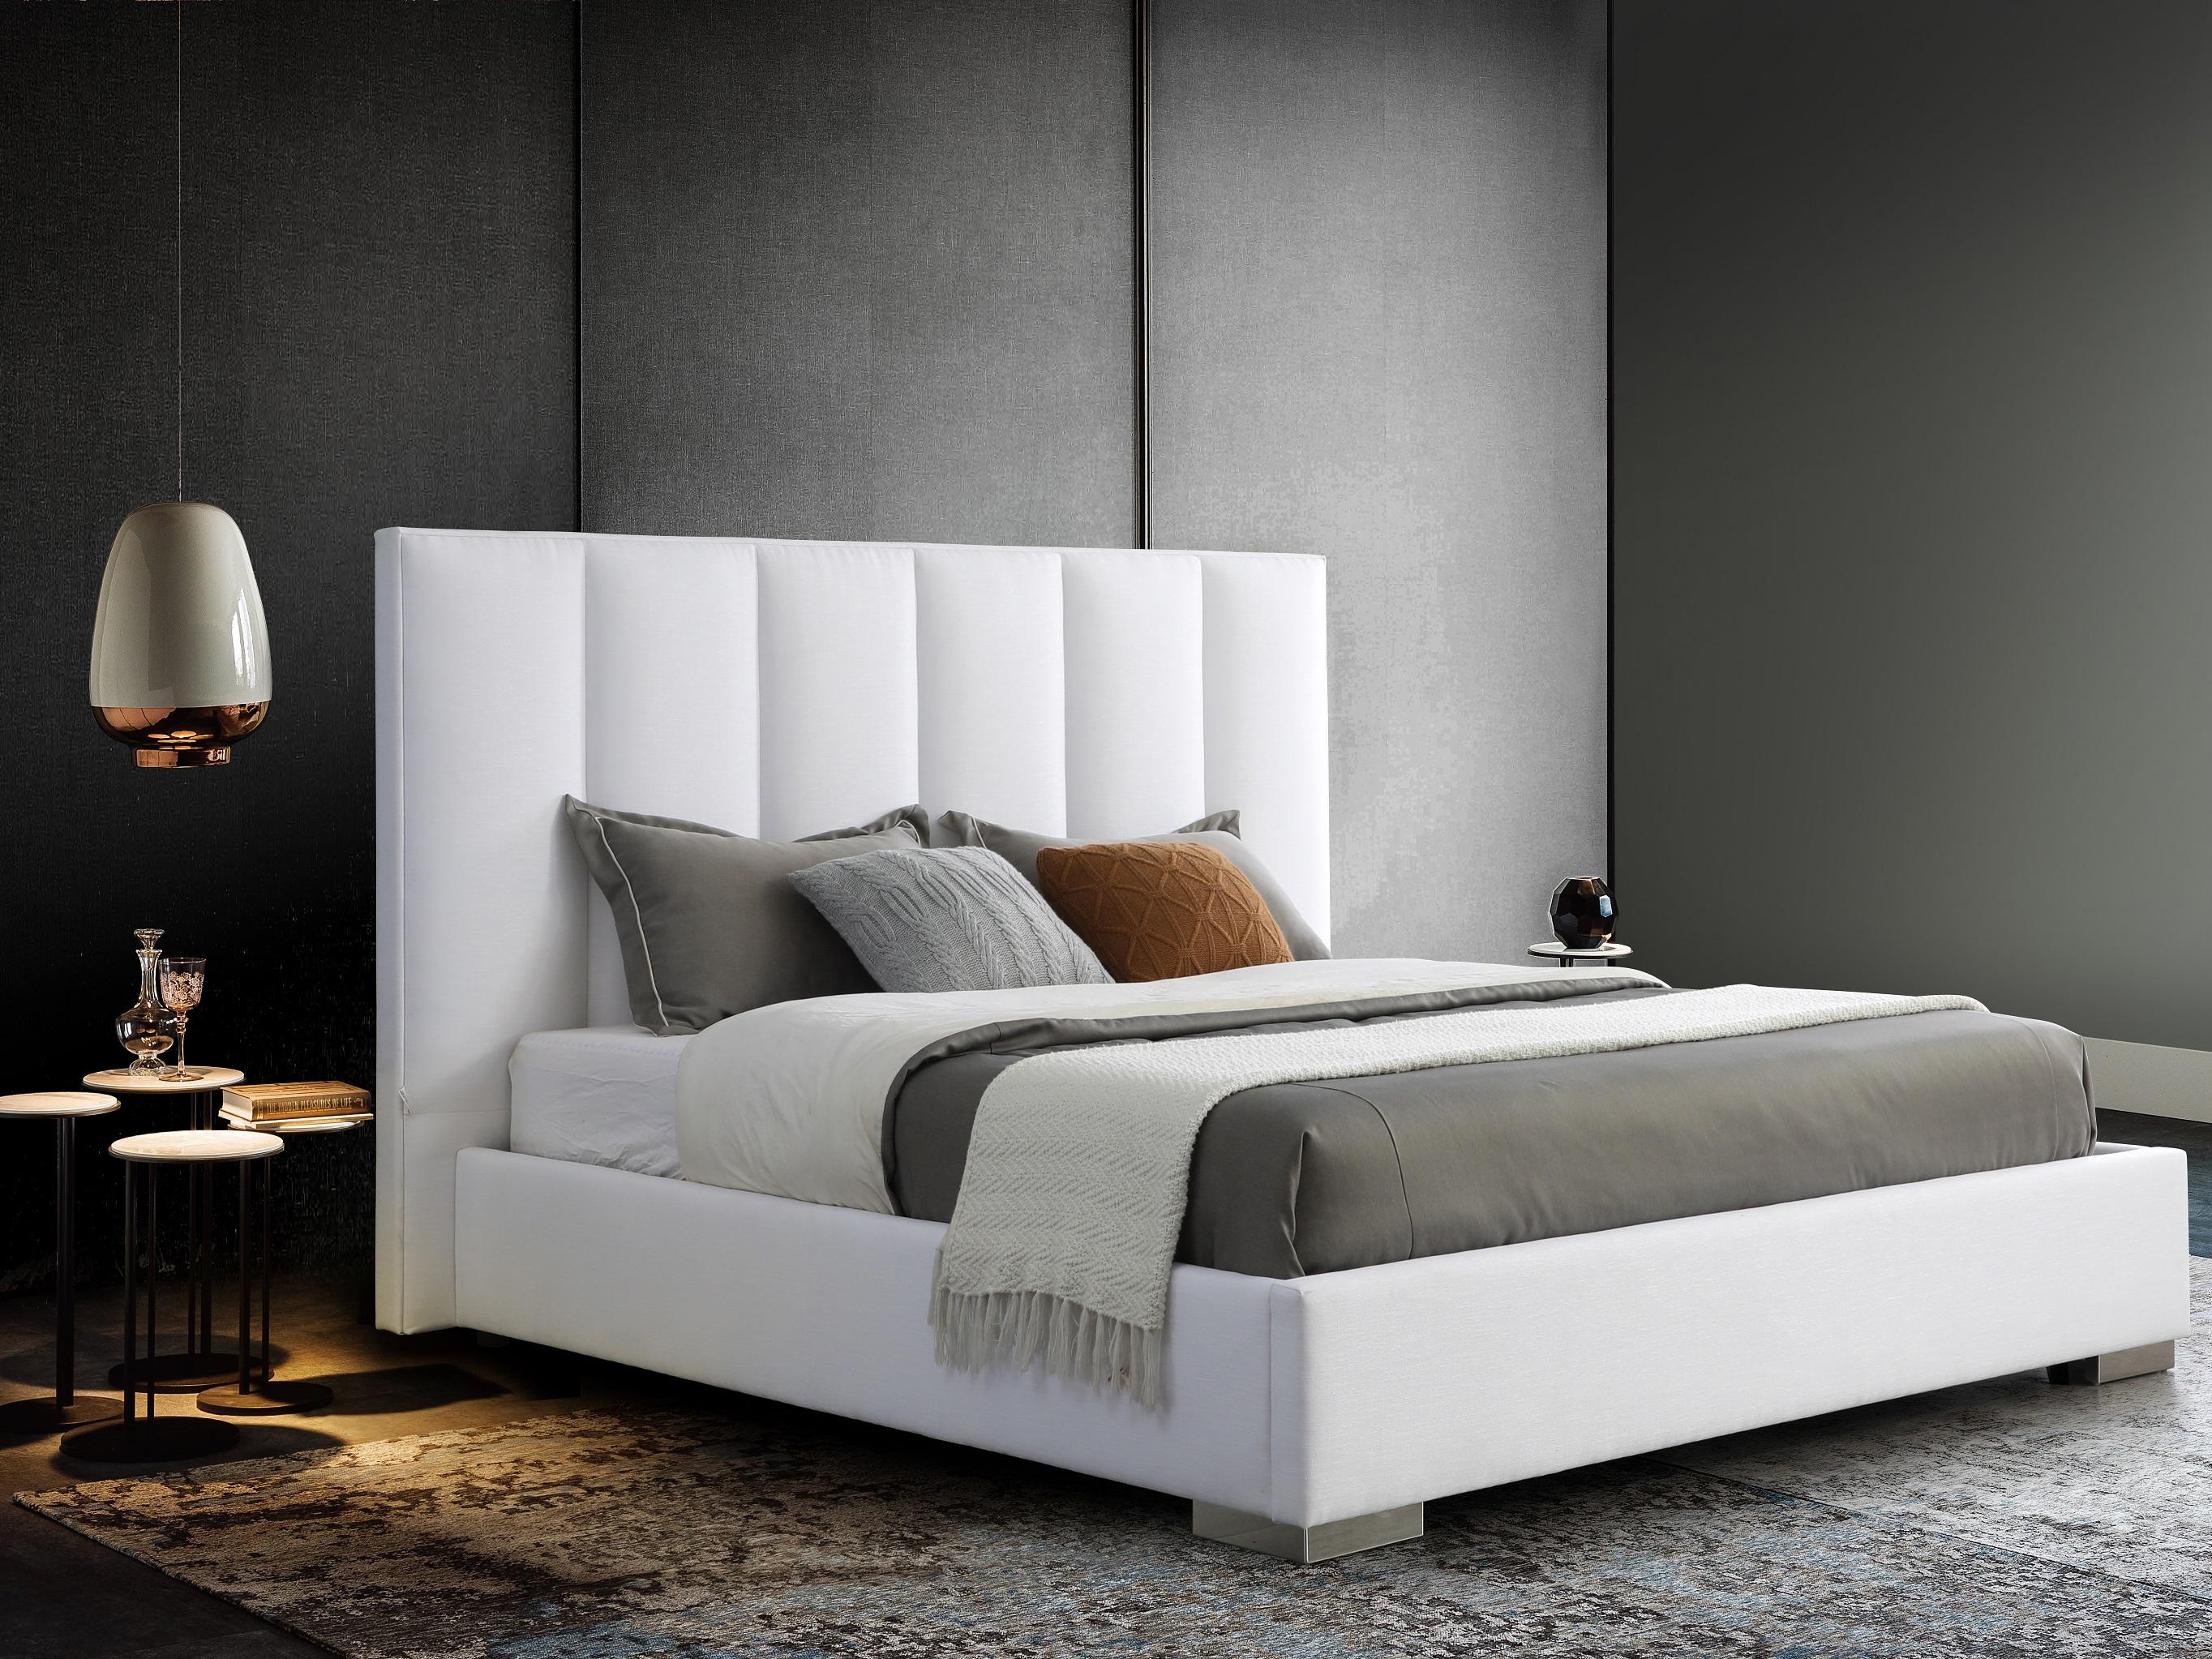 

    
WhiteLine BK1655-WHT Velvet Bed White BK1655-WHT
